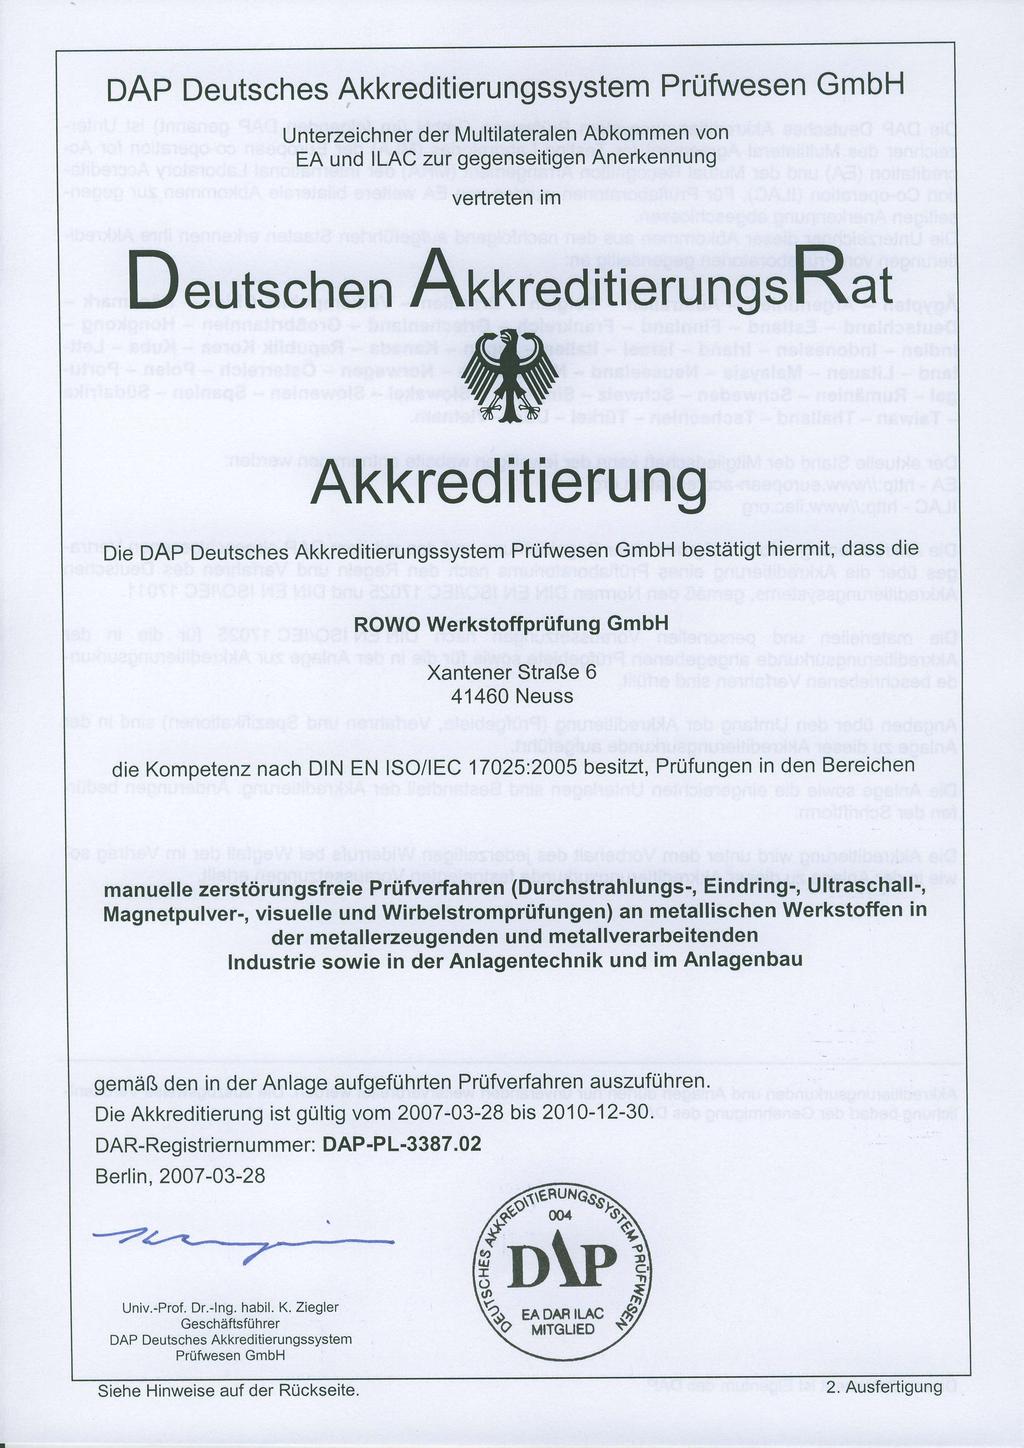 DAP Deutsches Akkreditierungssystem Prüfwesen GmbH Unterzeichner der Multilateralen Abkommen von EA und ILAC zur gegenseitigen Anerkennung vertreten im D eutschen Arorored itieru ngs Rat